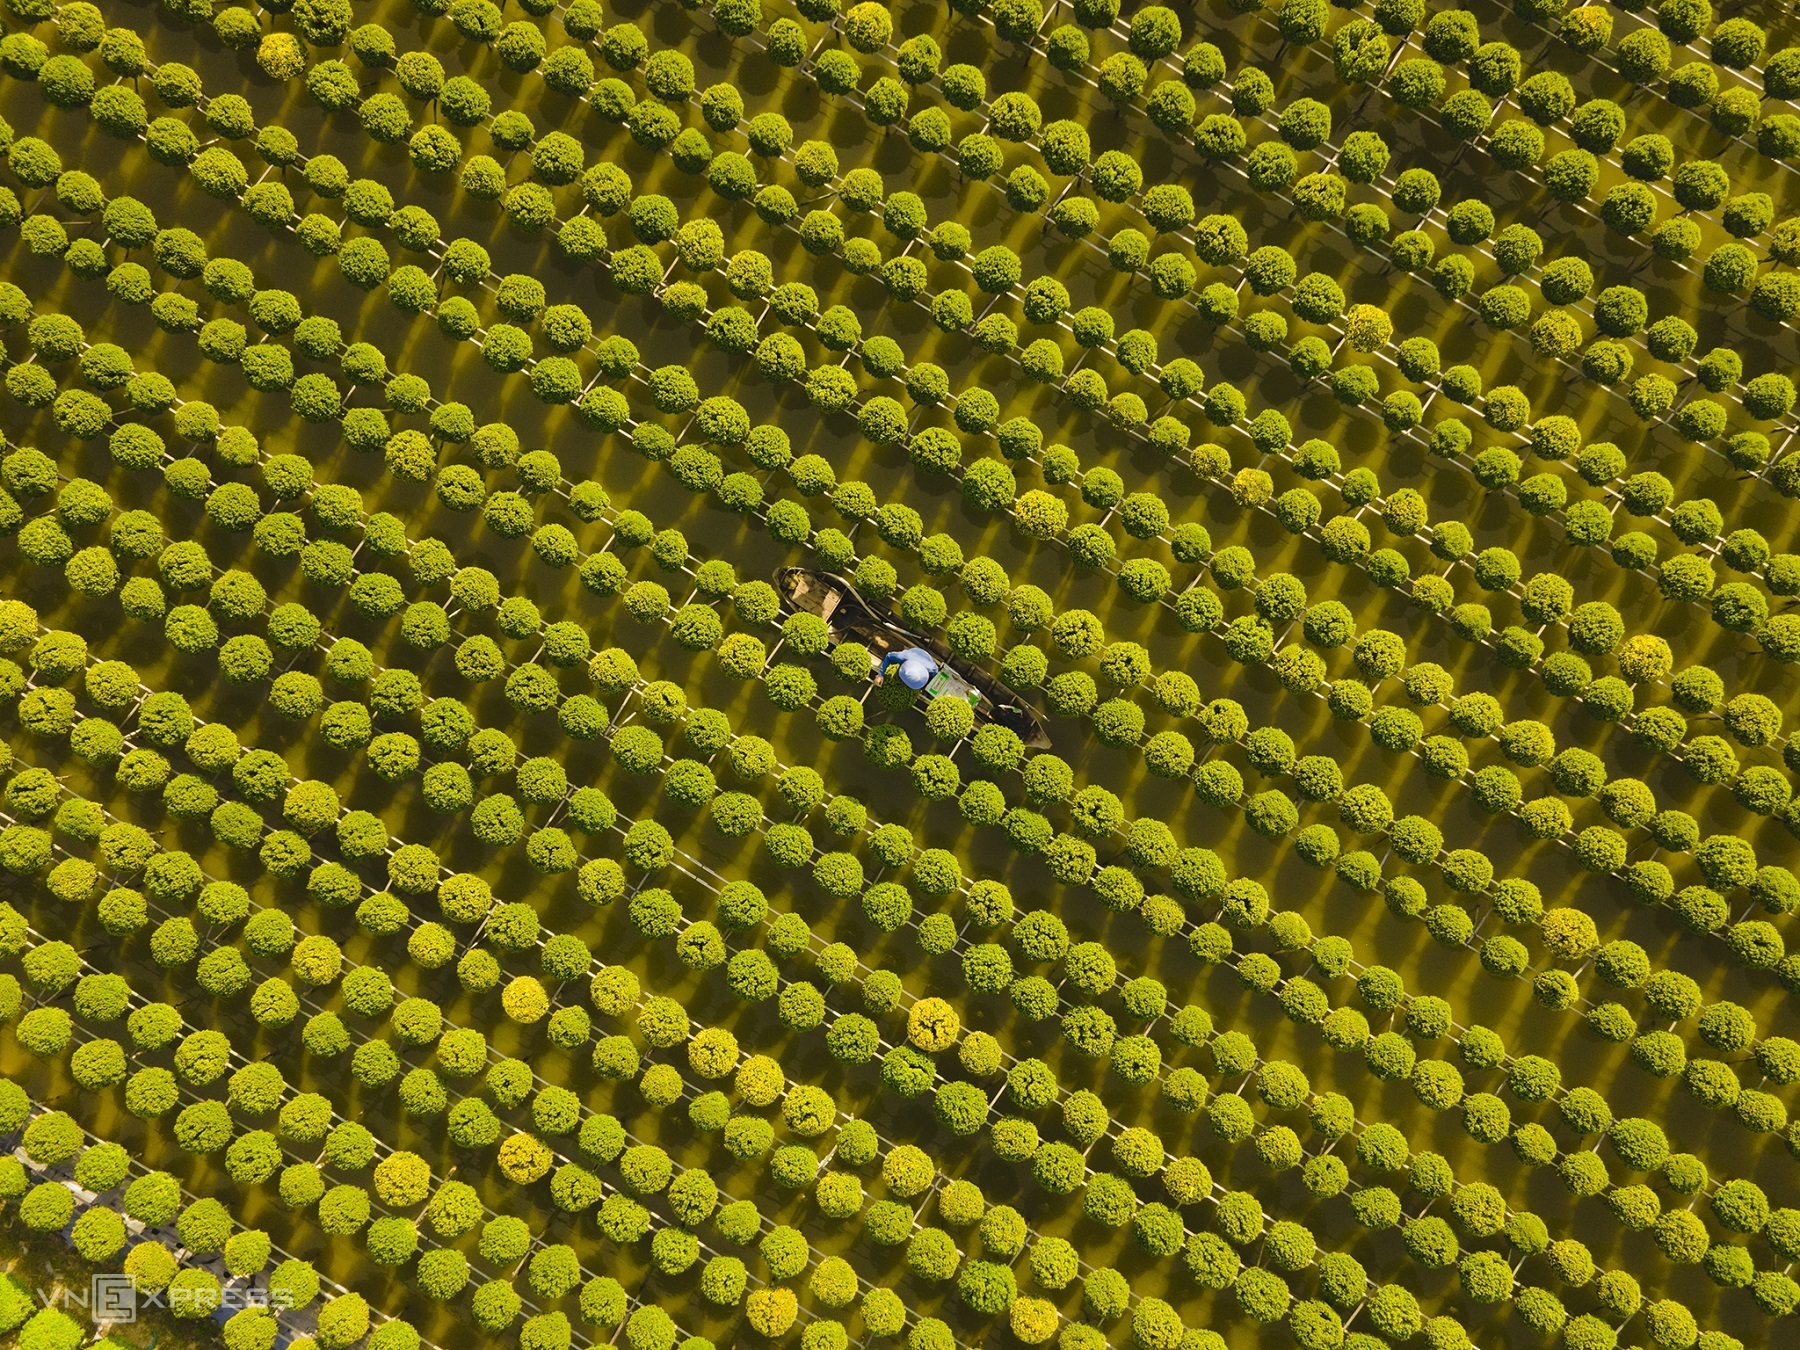 Ruộng hoa cúc mâm xôi, loài hoa chủ lực ở Sa Đéc, từ nụ màu xanh chớm nở vàng trong nắng sớm. Ảnh: Phạm Nguyên Bảo